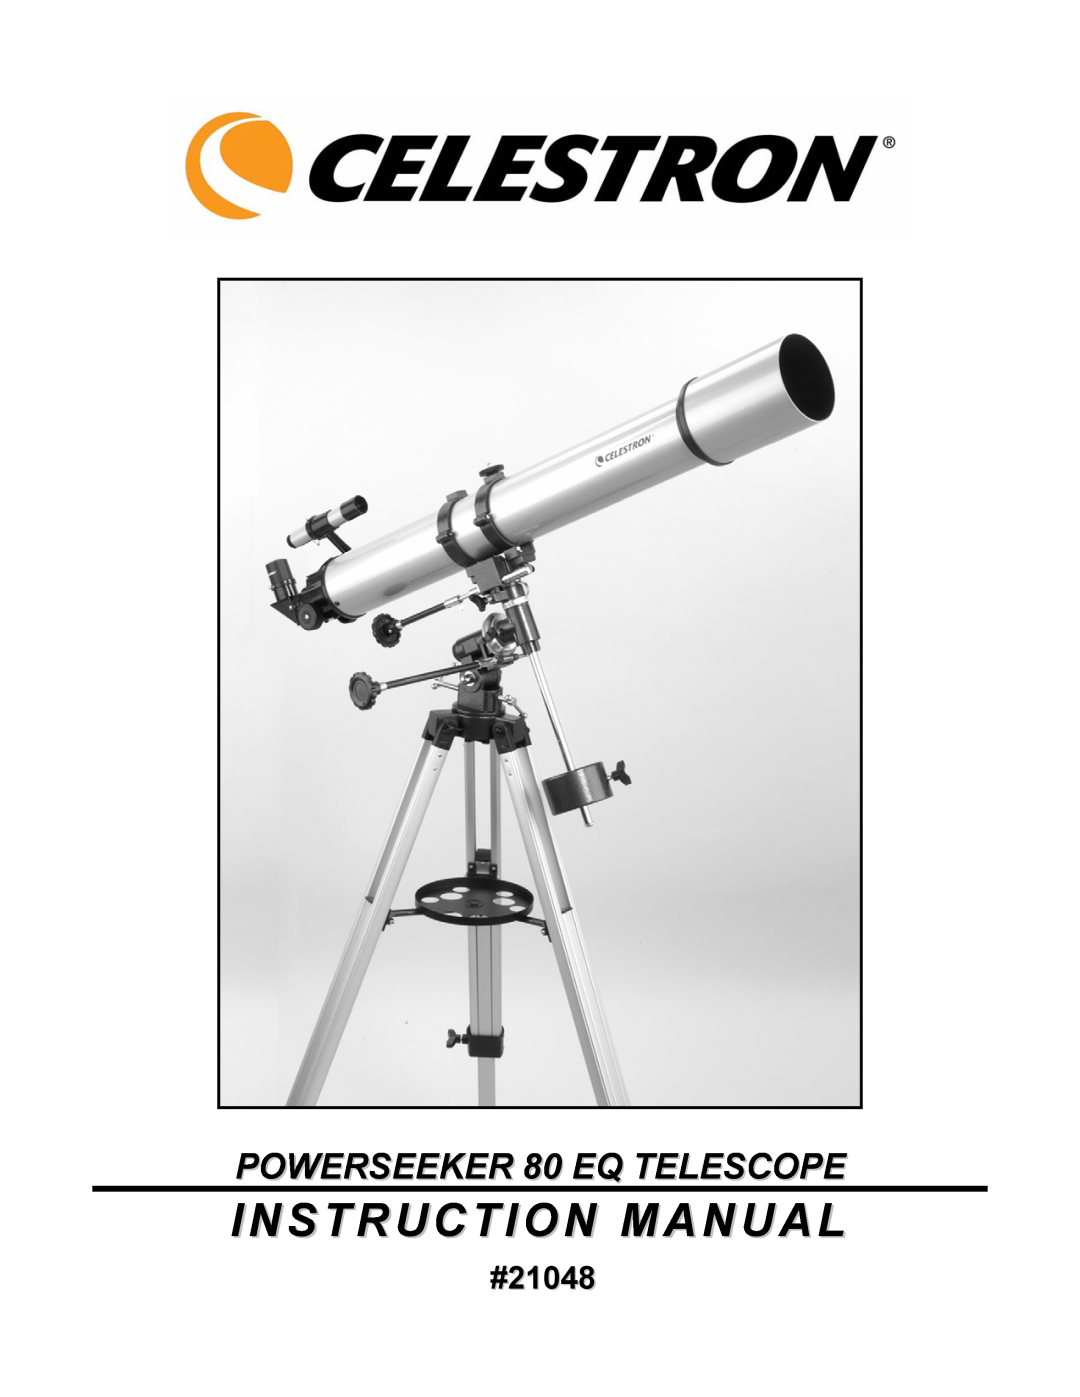 Celestron manual #21048, Instruction Manual, POWERSEEKER 80 EQ TELESCOPE 